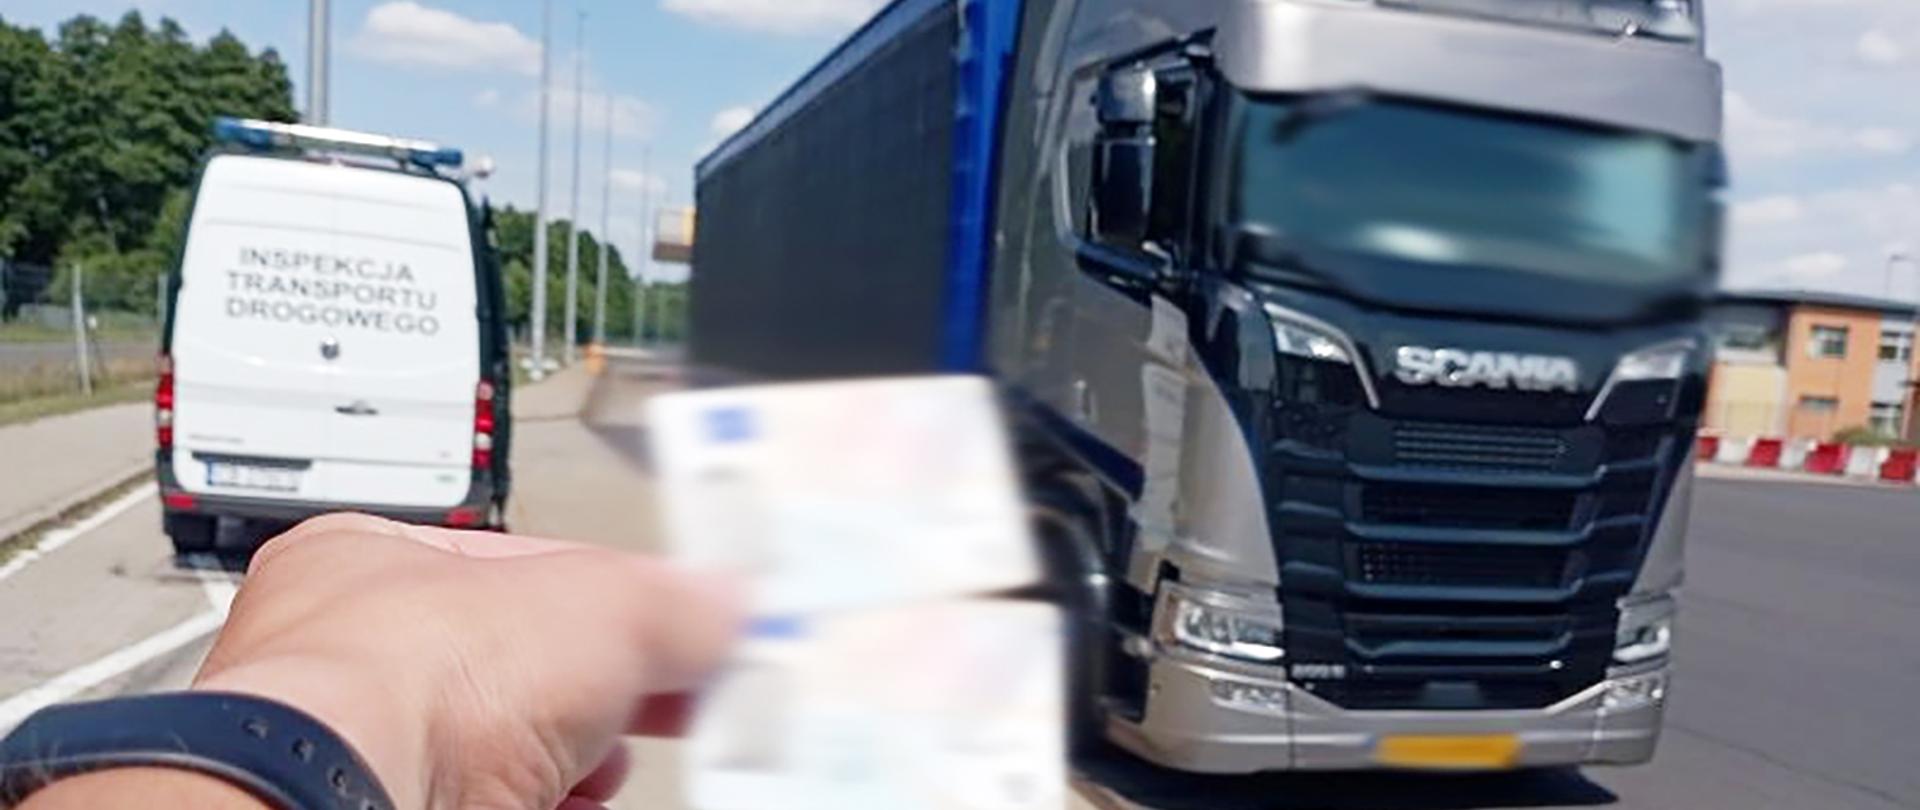 Ciężarówka niderlandzkiego przewoźnika i karty, na których rejestrował czas jazdy kierowca skontrolowany przez inspektorów kujawsko-pomorskiej ITD. Na pierwszym planie dwie karty kierowcy, którymi posługiwał się kierowca ciężarówki. Dalej - po lewej inspekcyjny furgon, a po prawej zatrzymana ciężarówka.